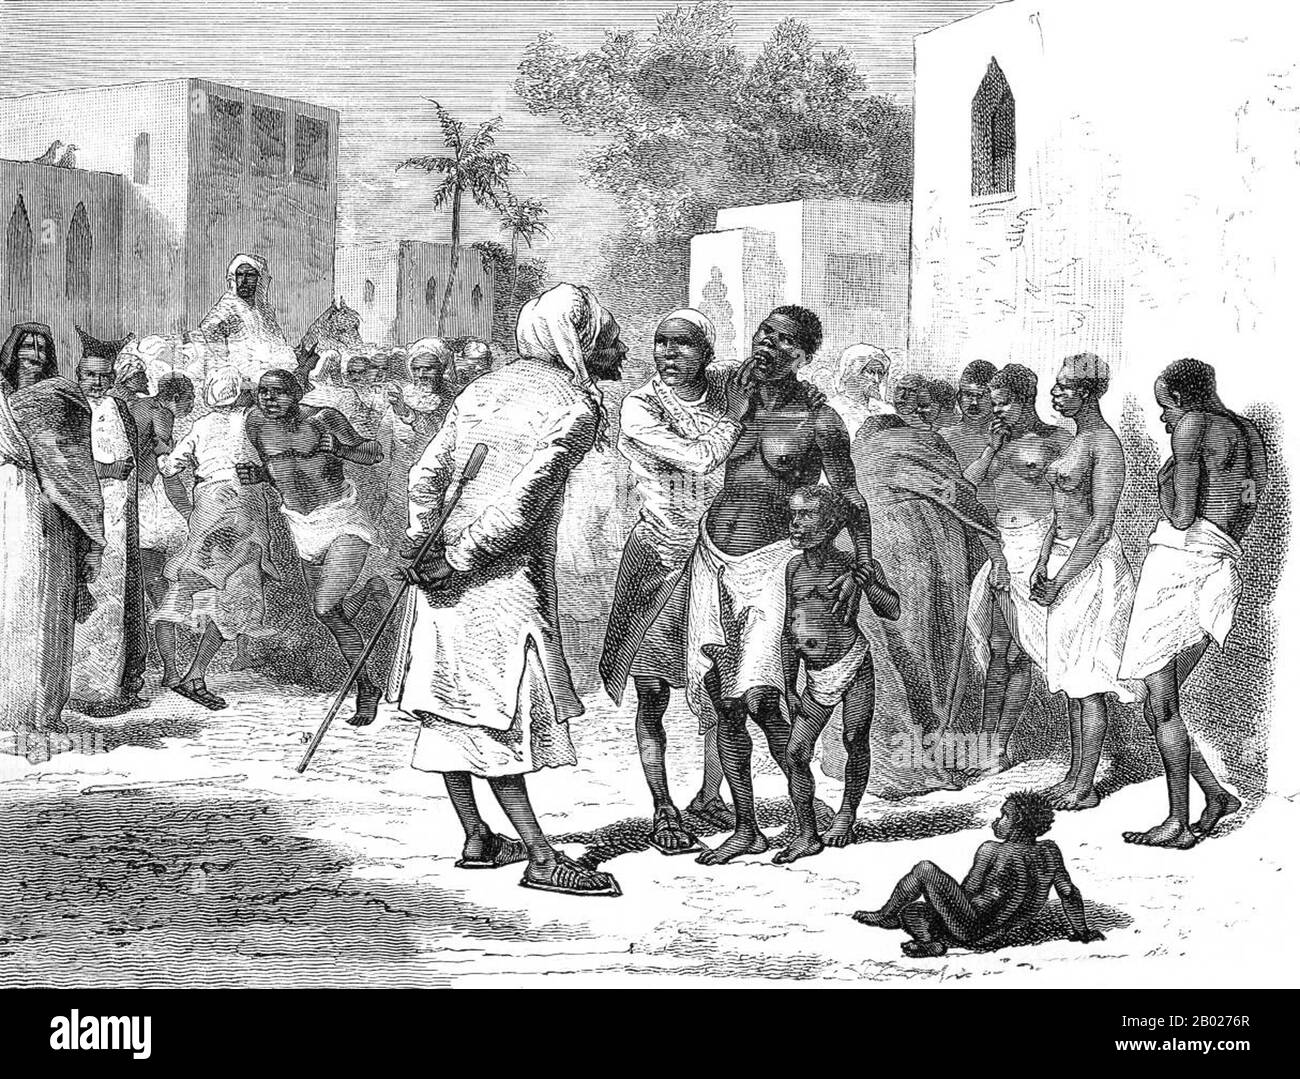 Nel 1698, Zanzibar cadde sotto il controllo del Sultanato dell'Oman. Fino a circa 1890, i sultani di Zanzibar controllavano una parte sostanziale della costa dell'Africa orientale, nota come Zanj, che comprendeva Mombasa, Dar es Salaam, e le rotte commerciali che si estendono molto più lontano nell'entroterra, come la rotta che conduce a Kindu sul fiume Congo. I sultani hanno sviluppato un'economia di scambi commerciali e colture in contanti nell'arcipelago di Zanzibar con una élite araba dominante. L'Ivory è stato un grande bene commerciale. L'arcipelago, conosciuto anche come le Isole delle Spezie, era famoso in tutto il mondo per i suoi chiodi di garofano e altre spezie, e le piantagioni sono state avvilate Foto Stock